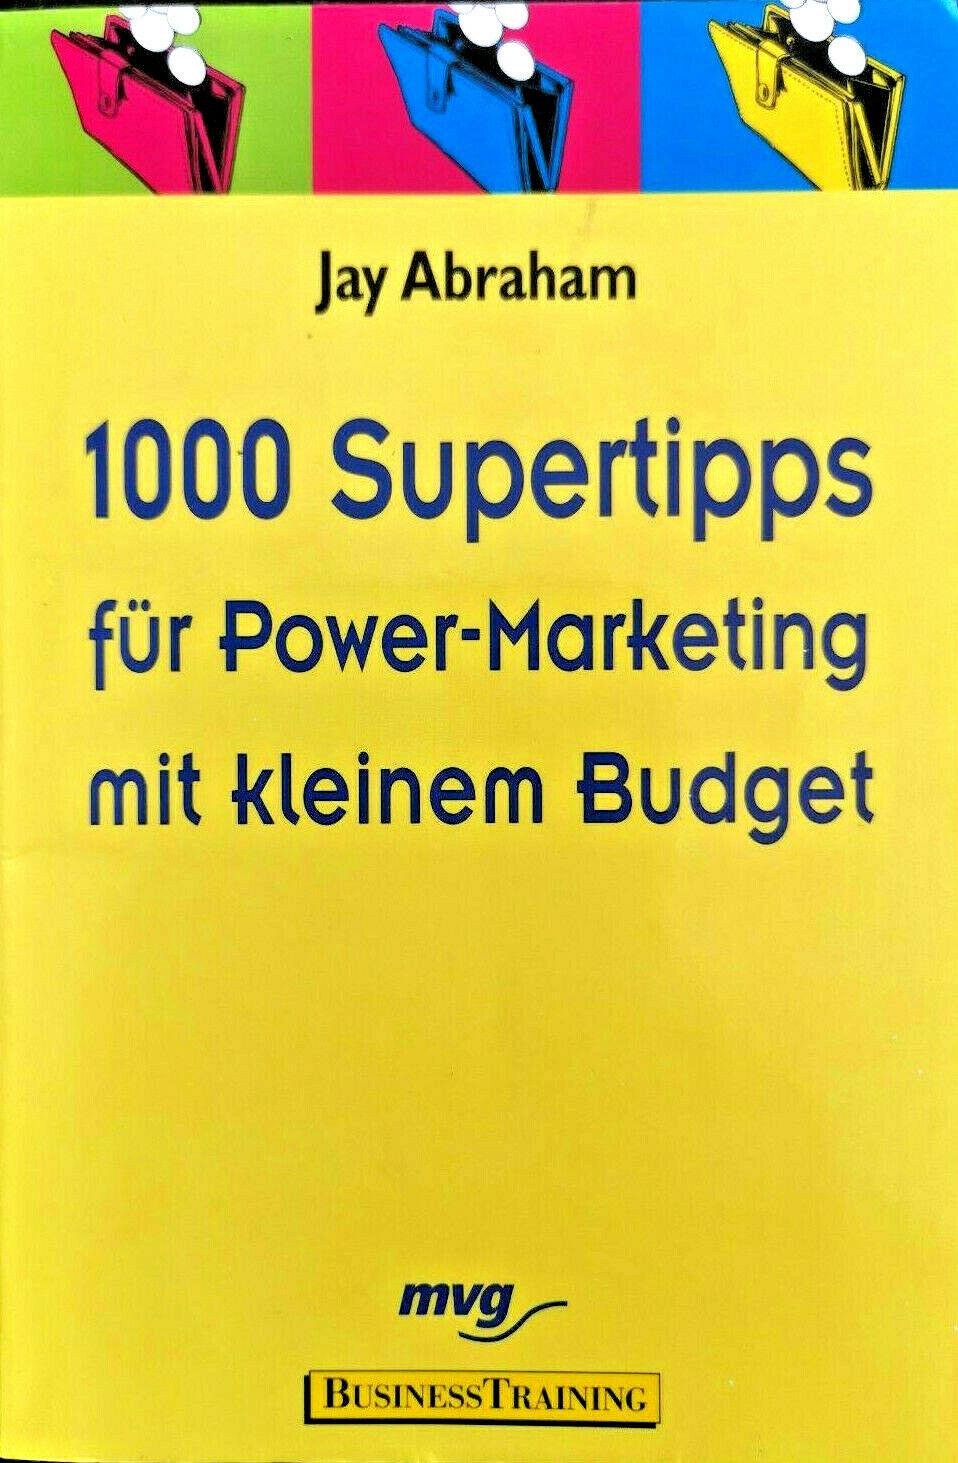 1000 Supertipps für Power-Marketing mit kleinem Budget, Jay Abraham, Susanne Reichert